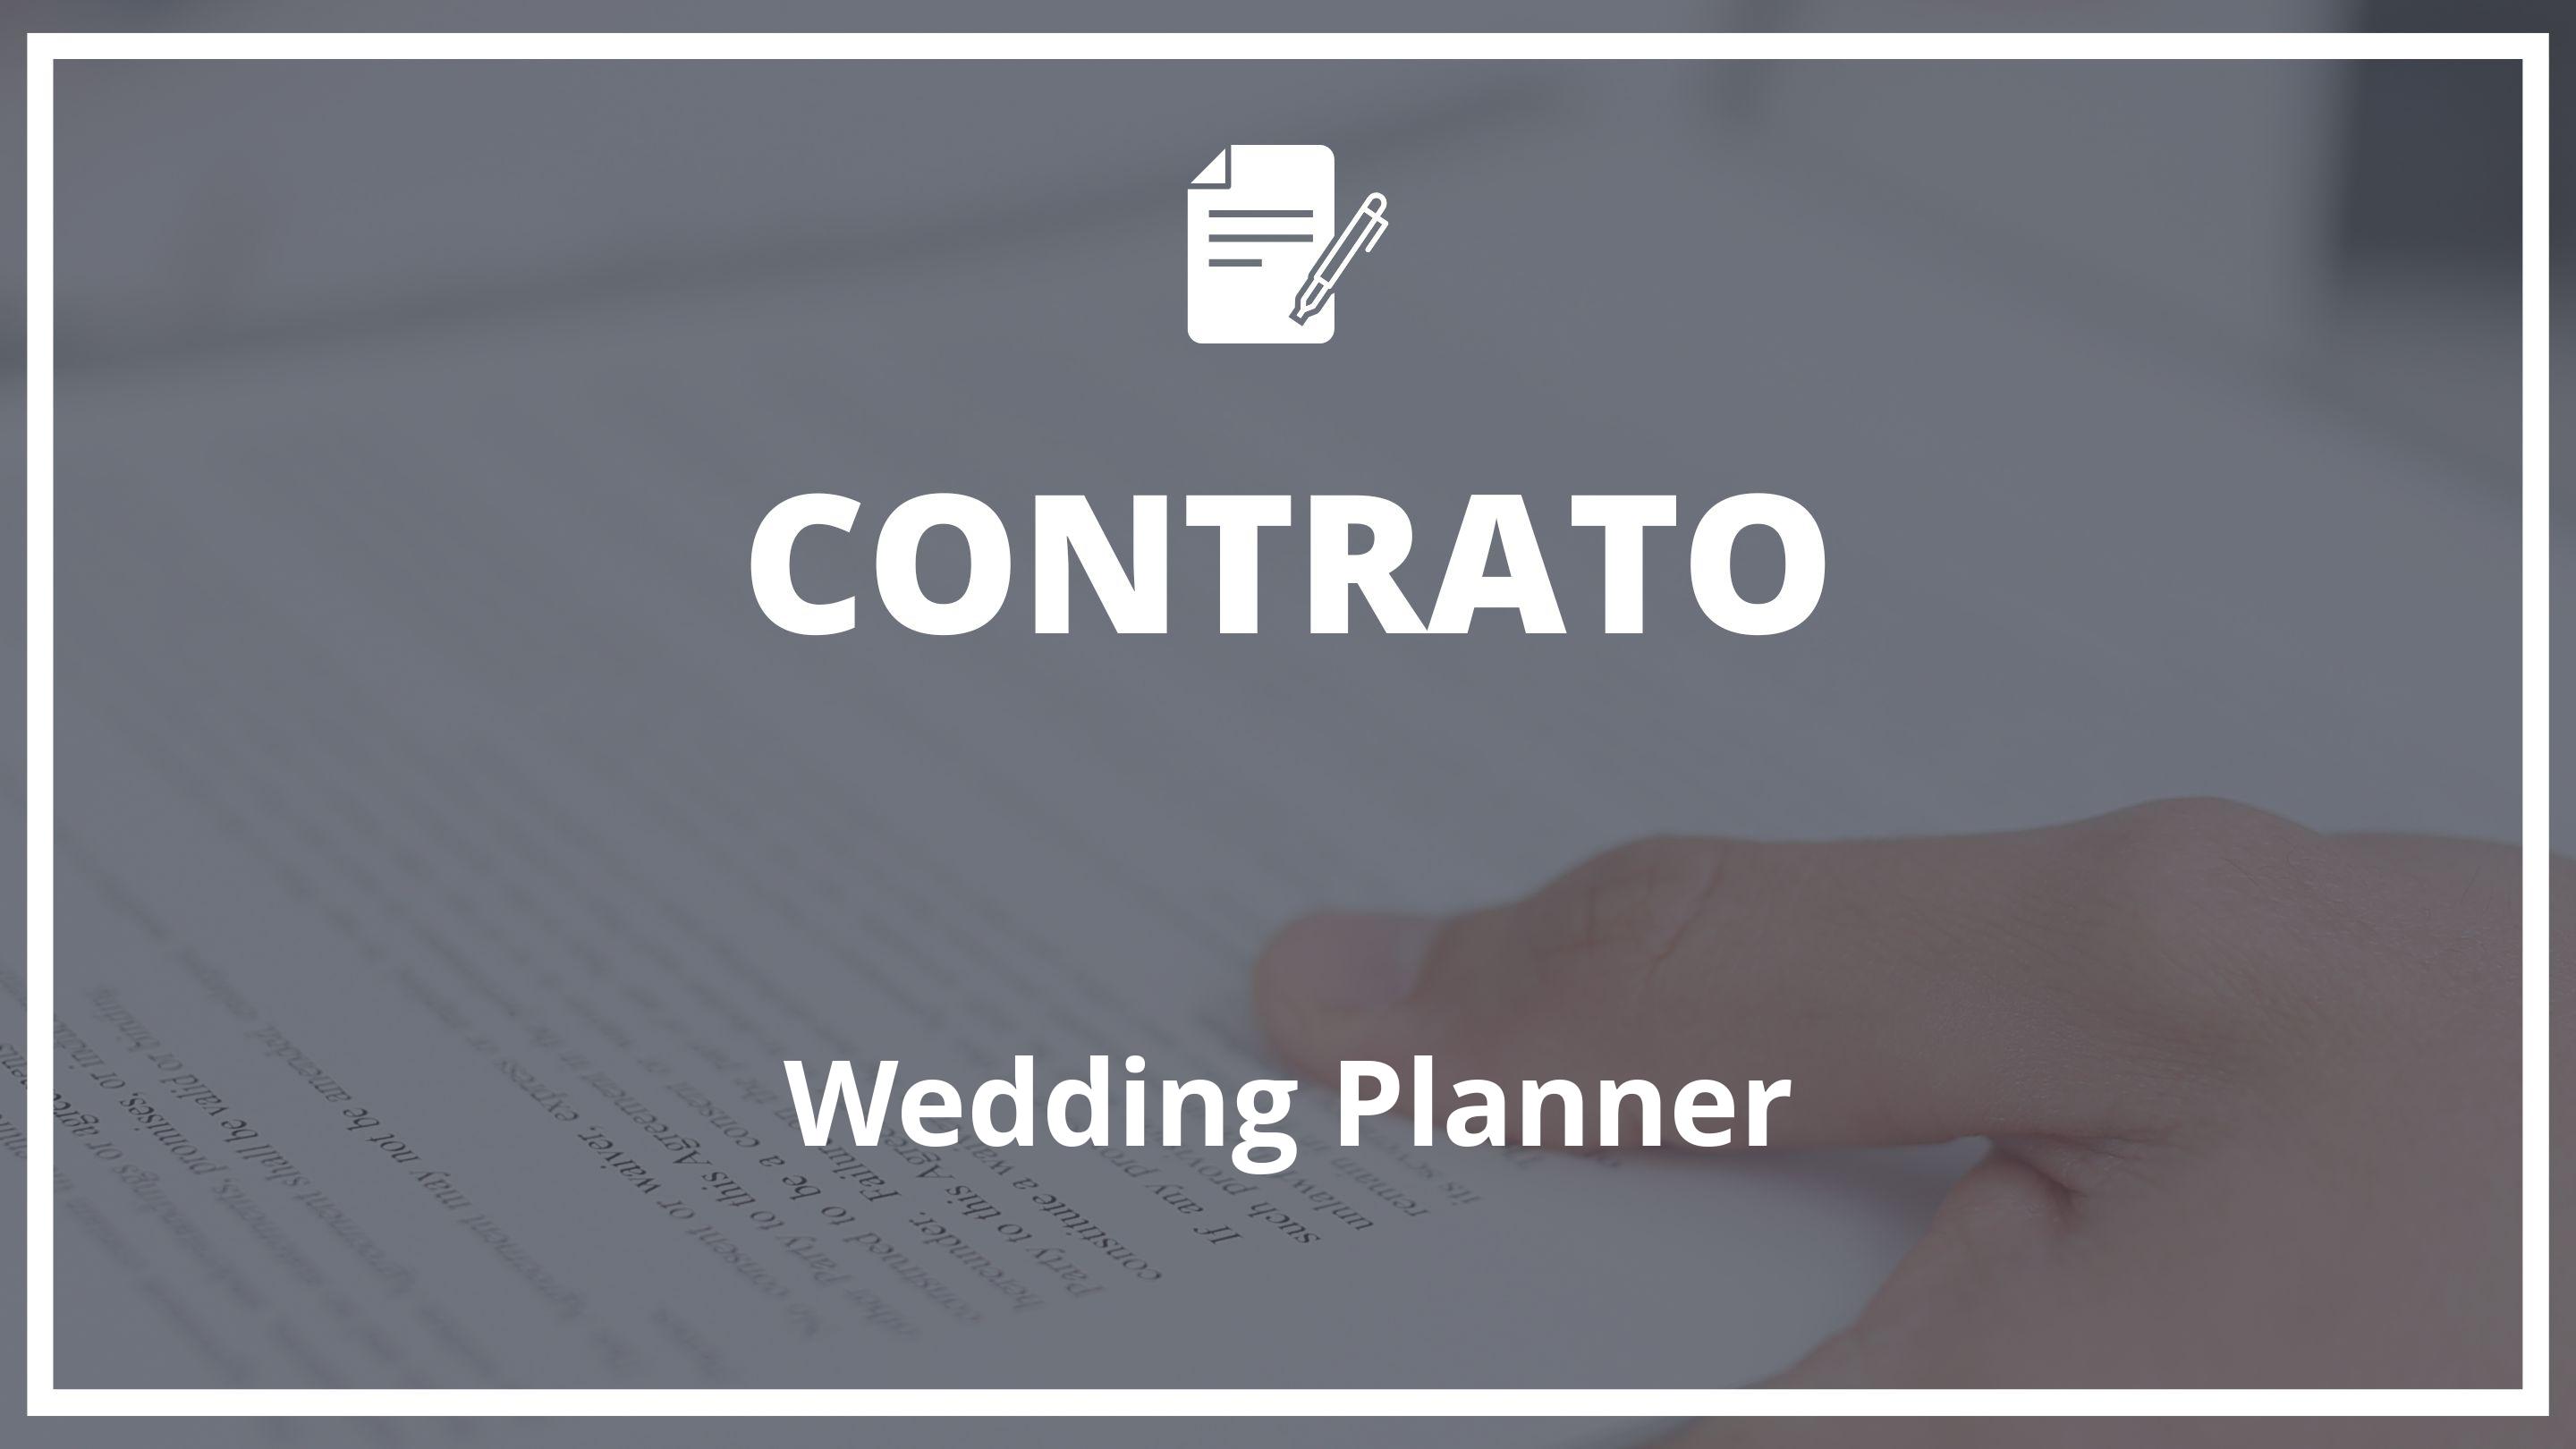 Contrato De Wedding Planner